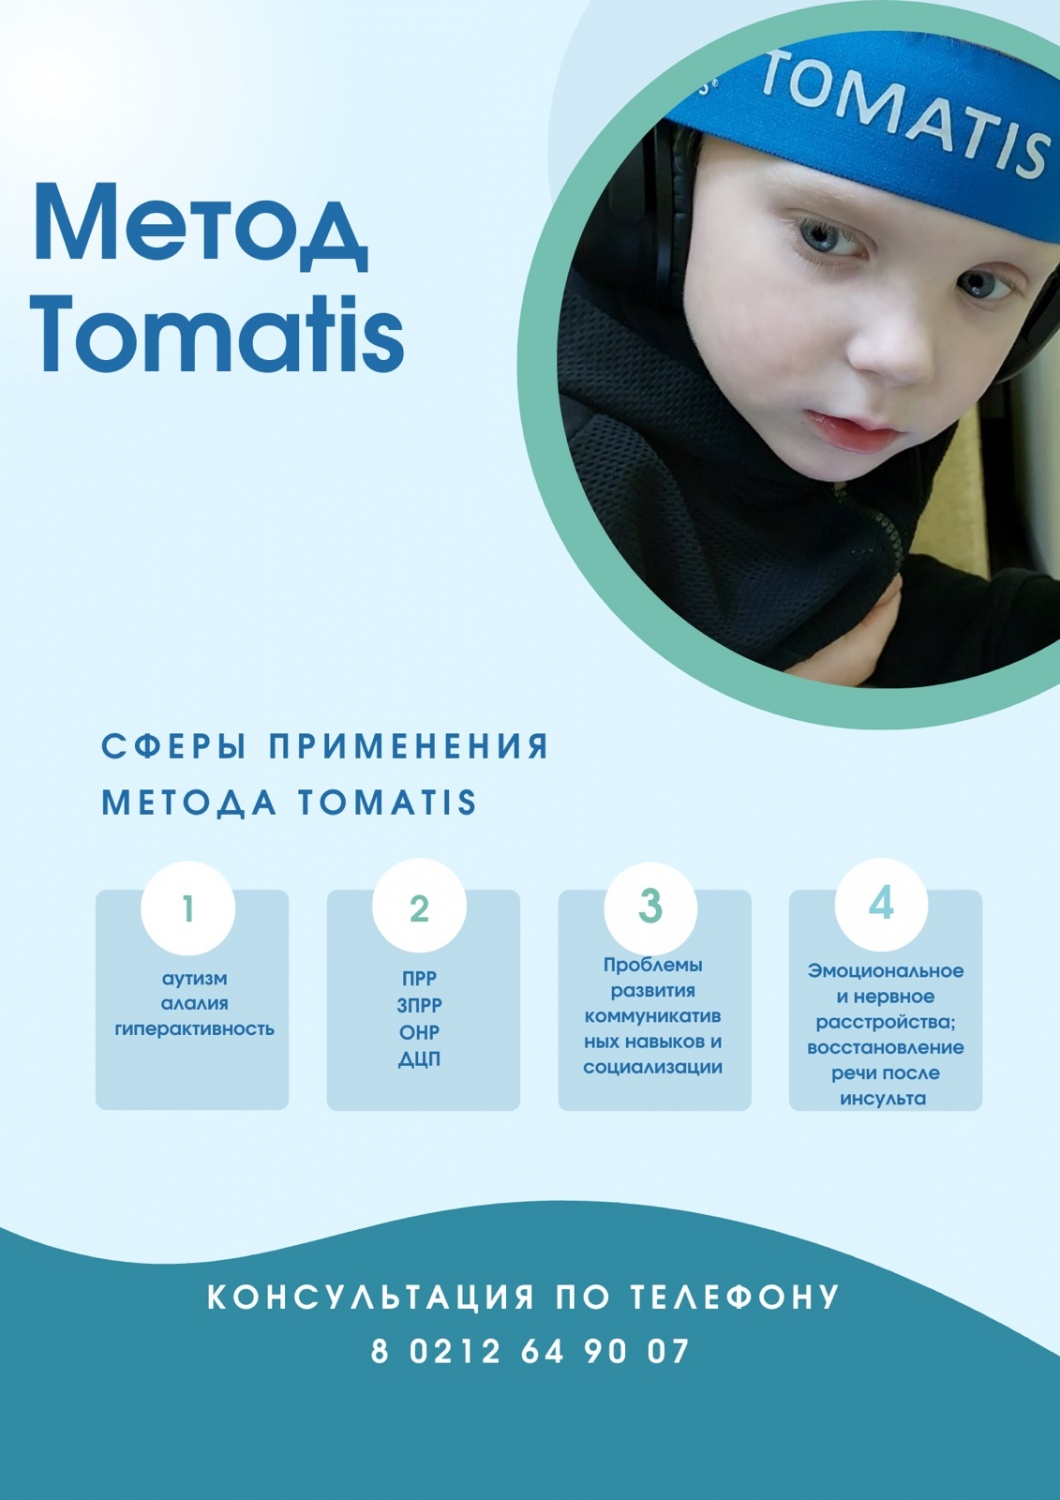 Новая социальная услуга "Метод Tomatis"